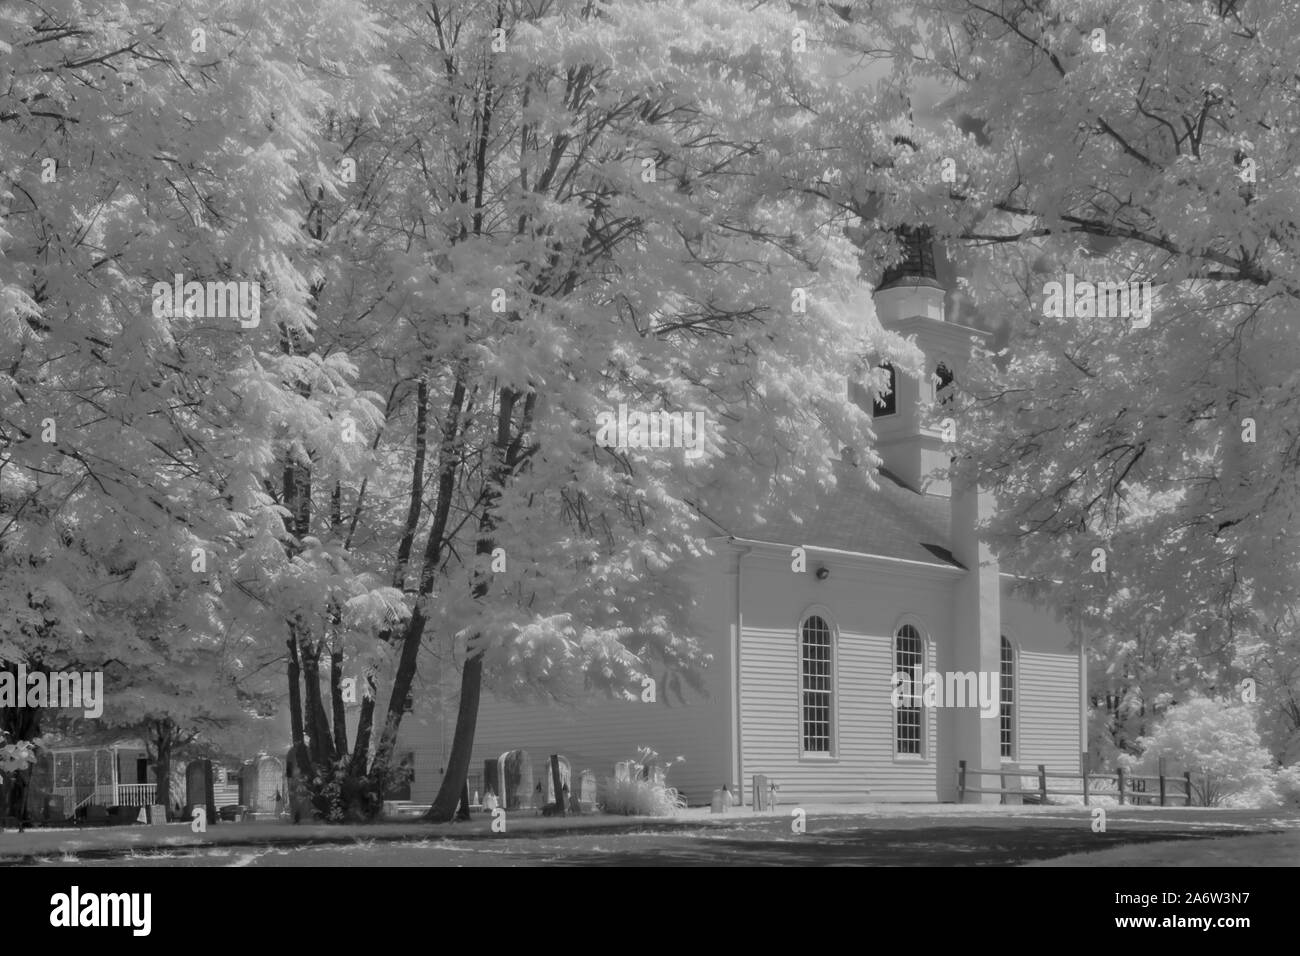 Dorf Kapelle - Schwarz und Weiß infrarot Ansicht auf eine mehr als hundert Jahre alten, restaurierten Vereinigte Methodistische Kirche, Kirchturm und Friedhof cemeter Stockfoto